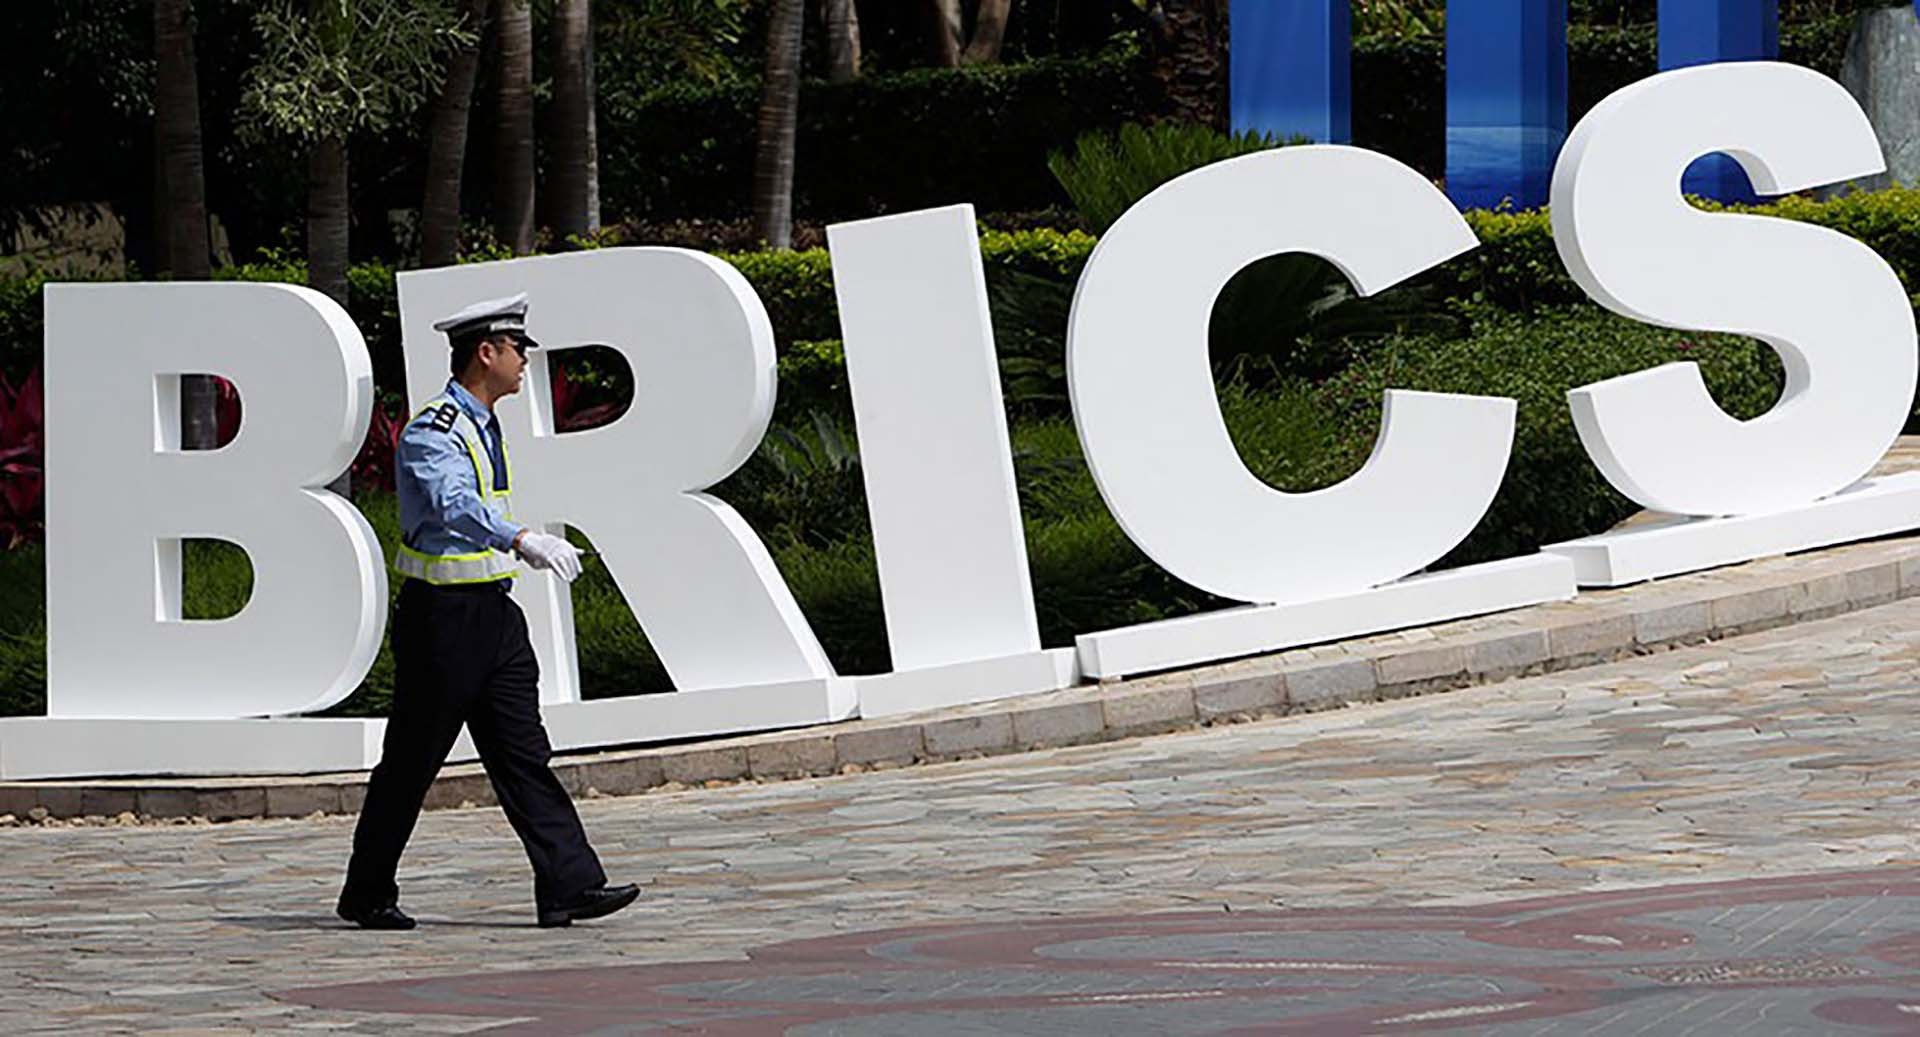 Argentina chính thức thông báo không gia nhập BRICS